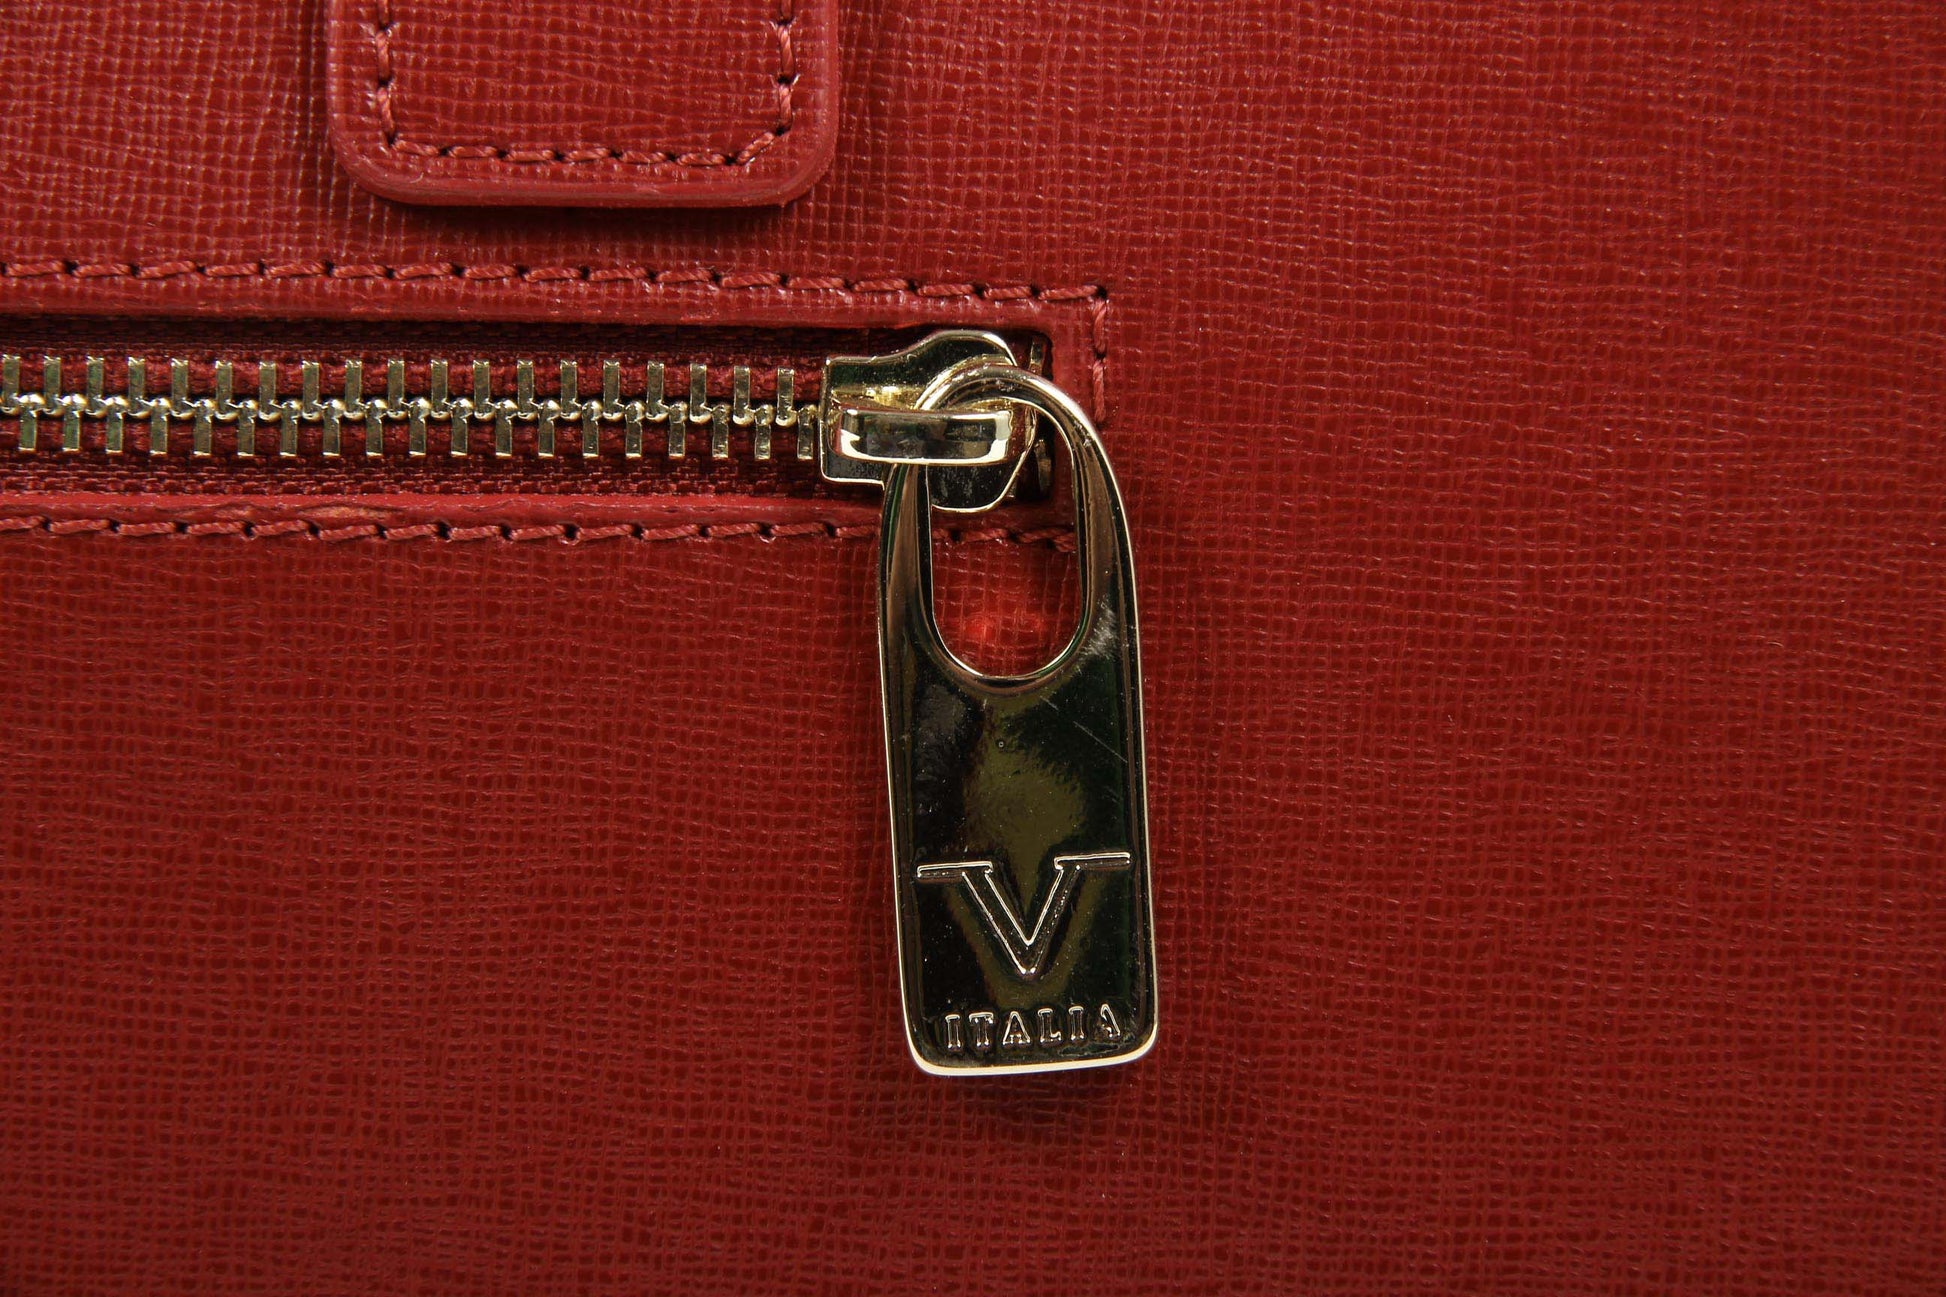 V 1969 Italia Womens Handbag V013-S SAFFIANO RED